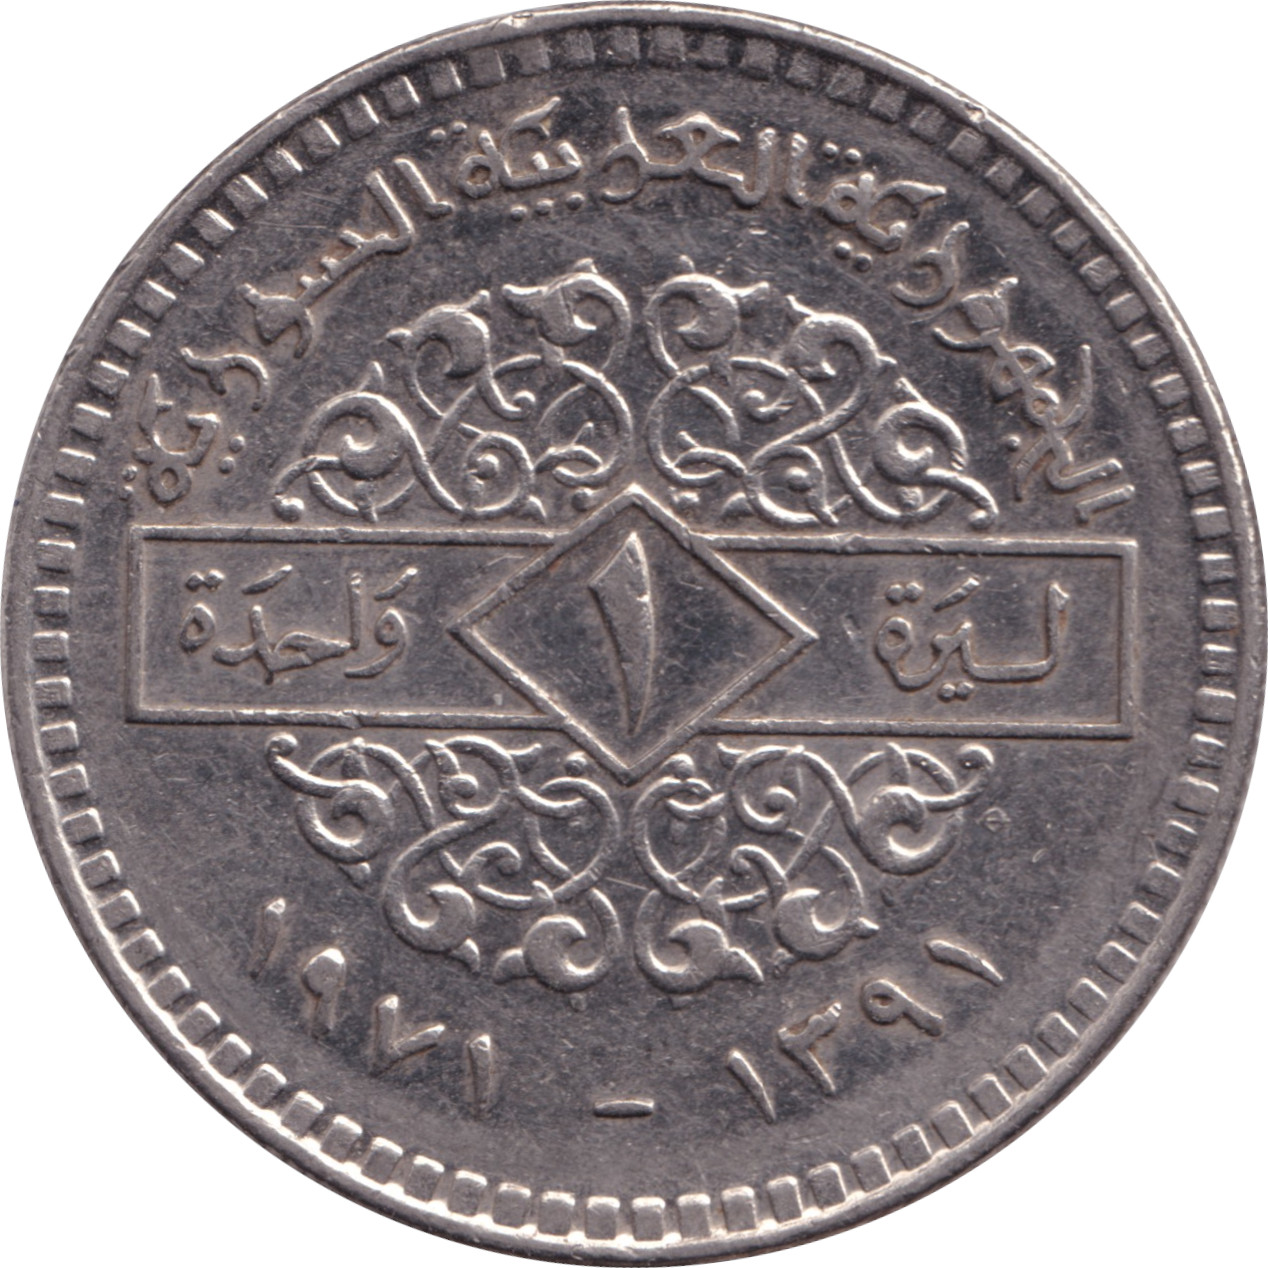 1 pound - République arabe - Type 1